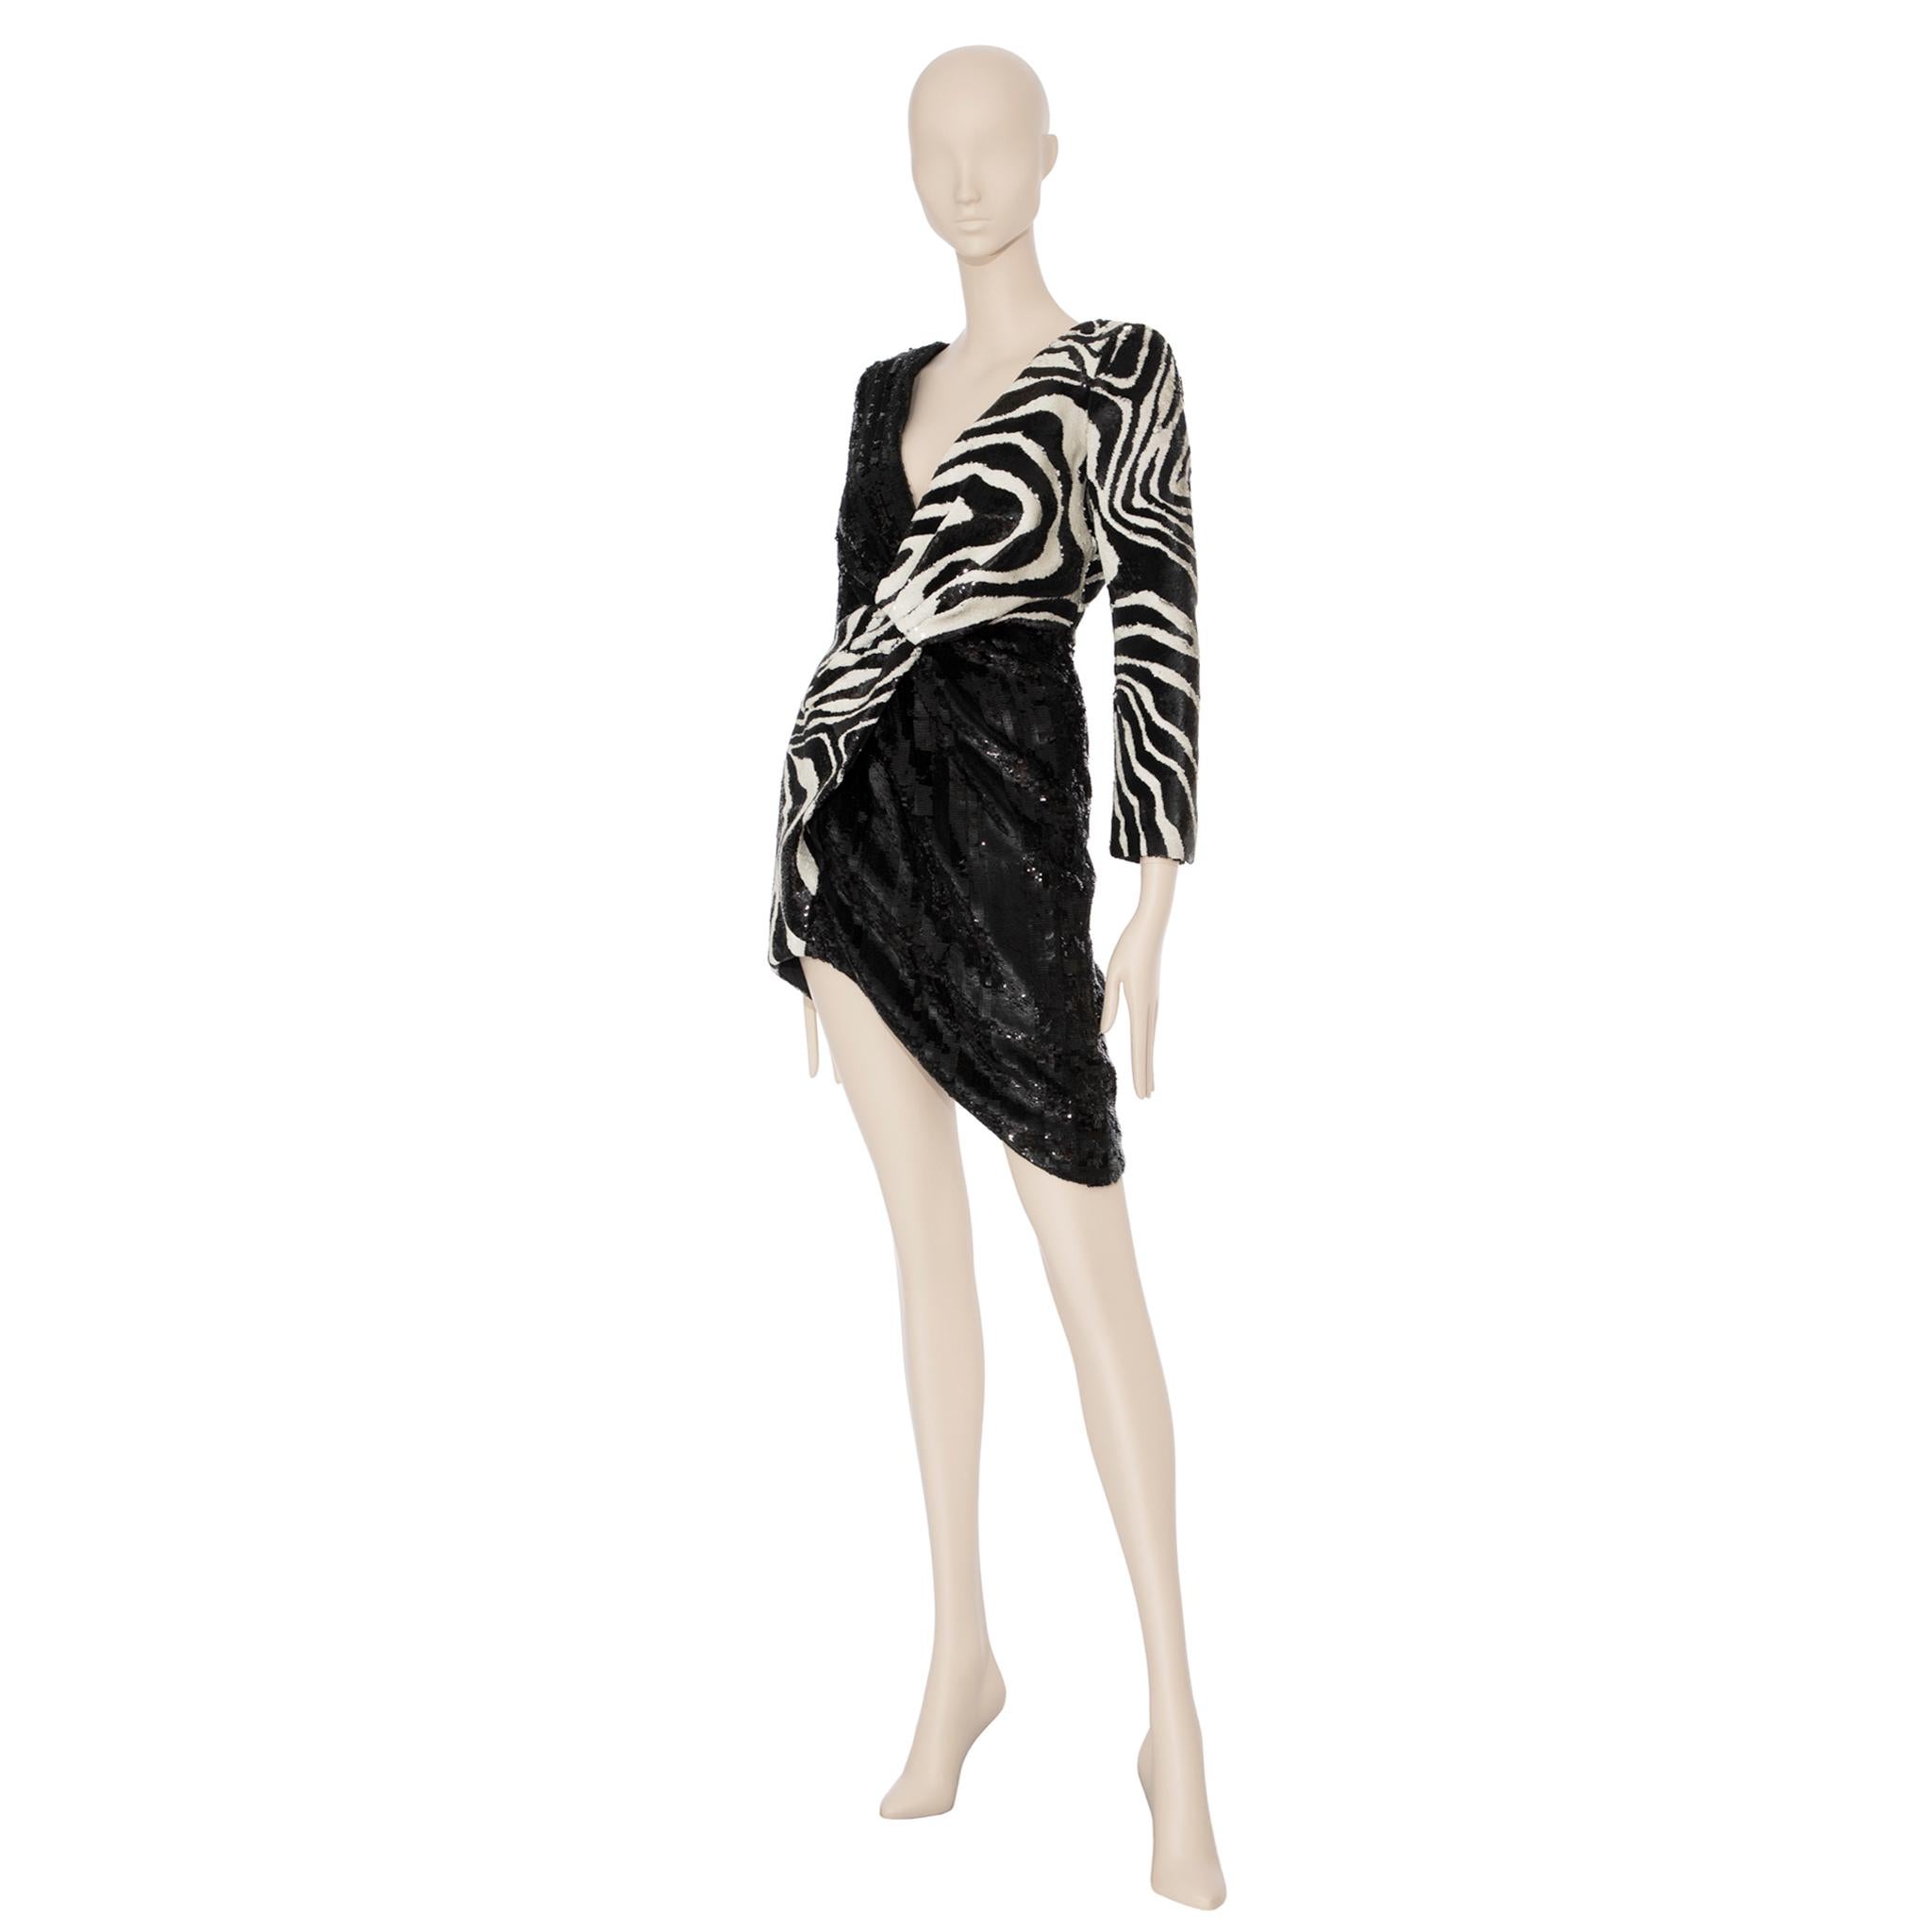 Saint Laurent by Hedi Slimane Asymmetric Zebra Print Sequin Dress 36 FR For Sale 5